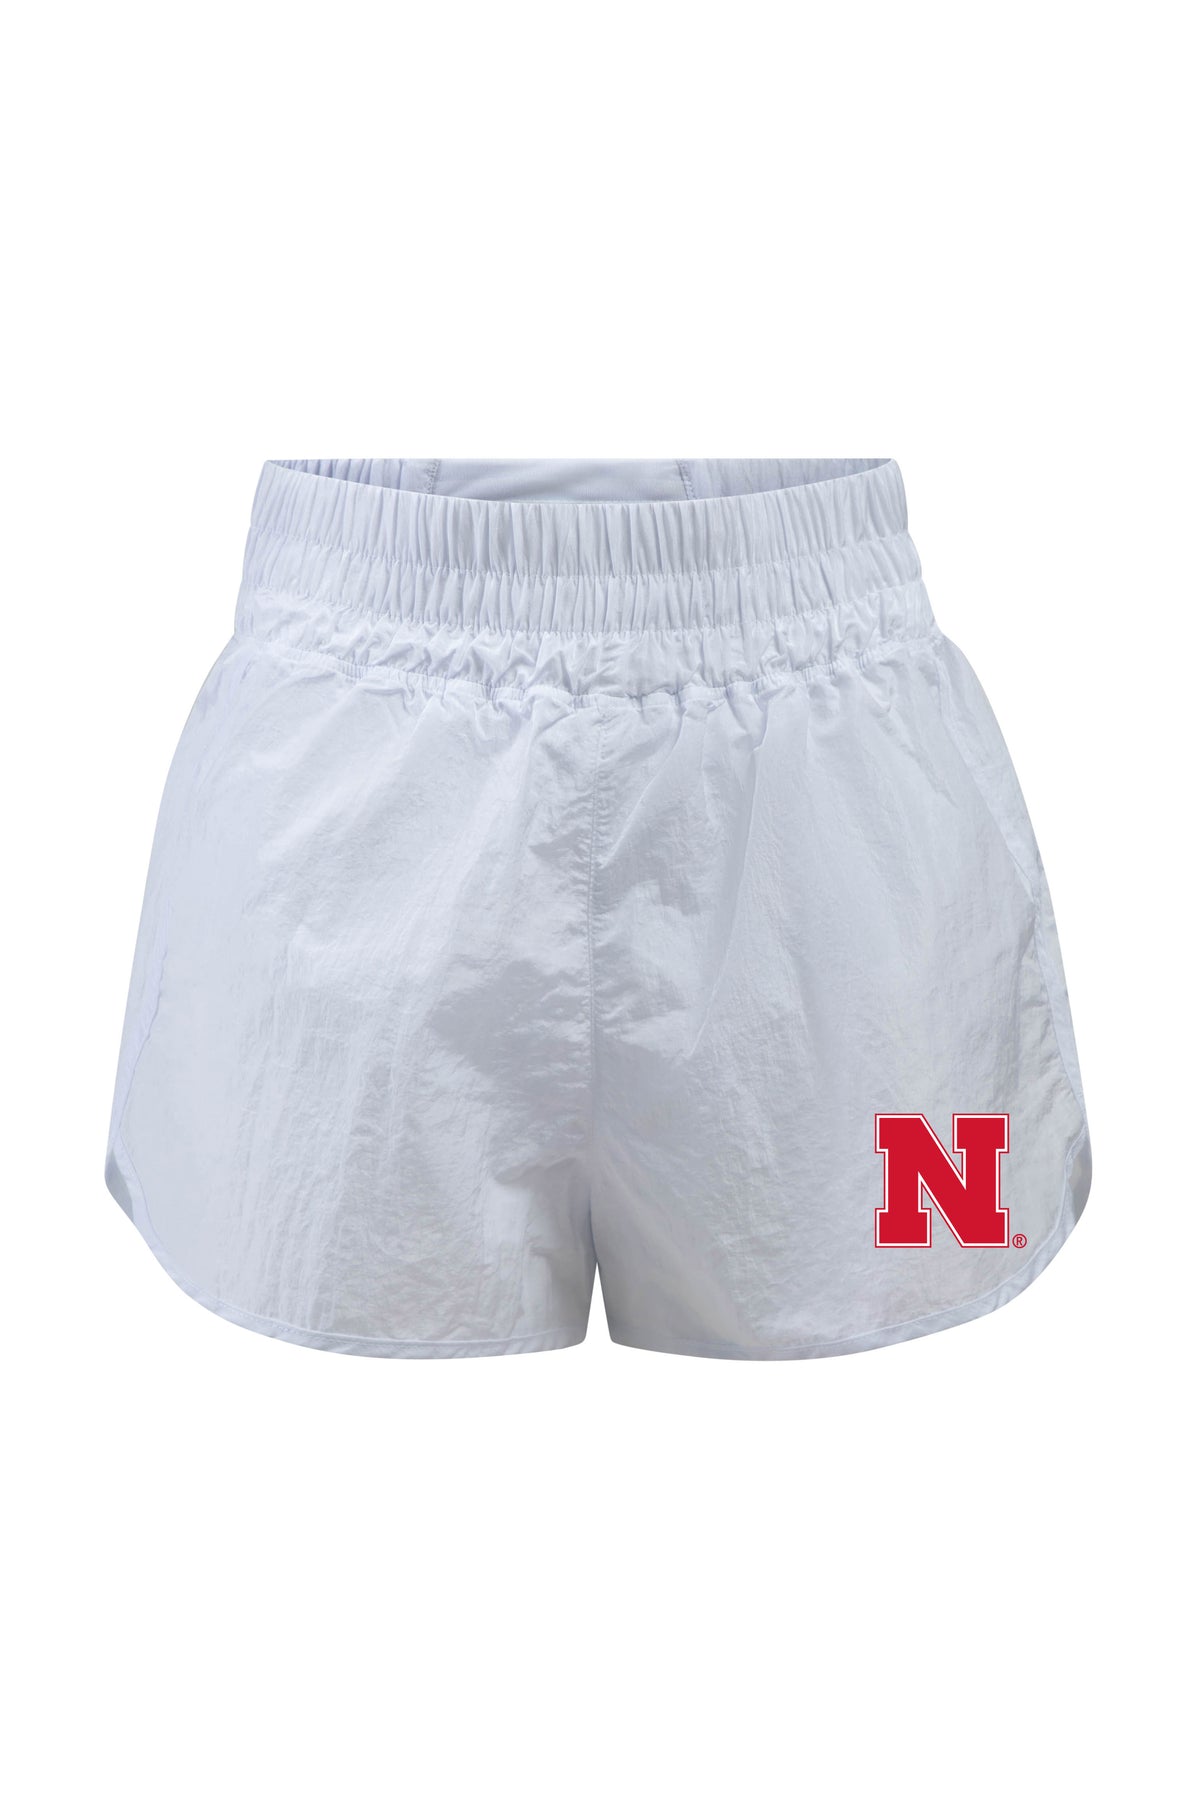 University of Nebraska Boxer Short